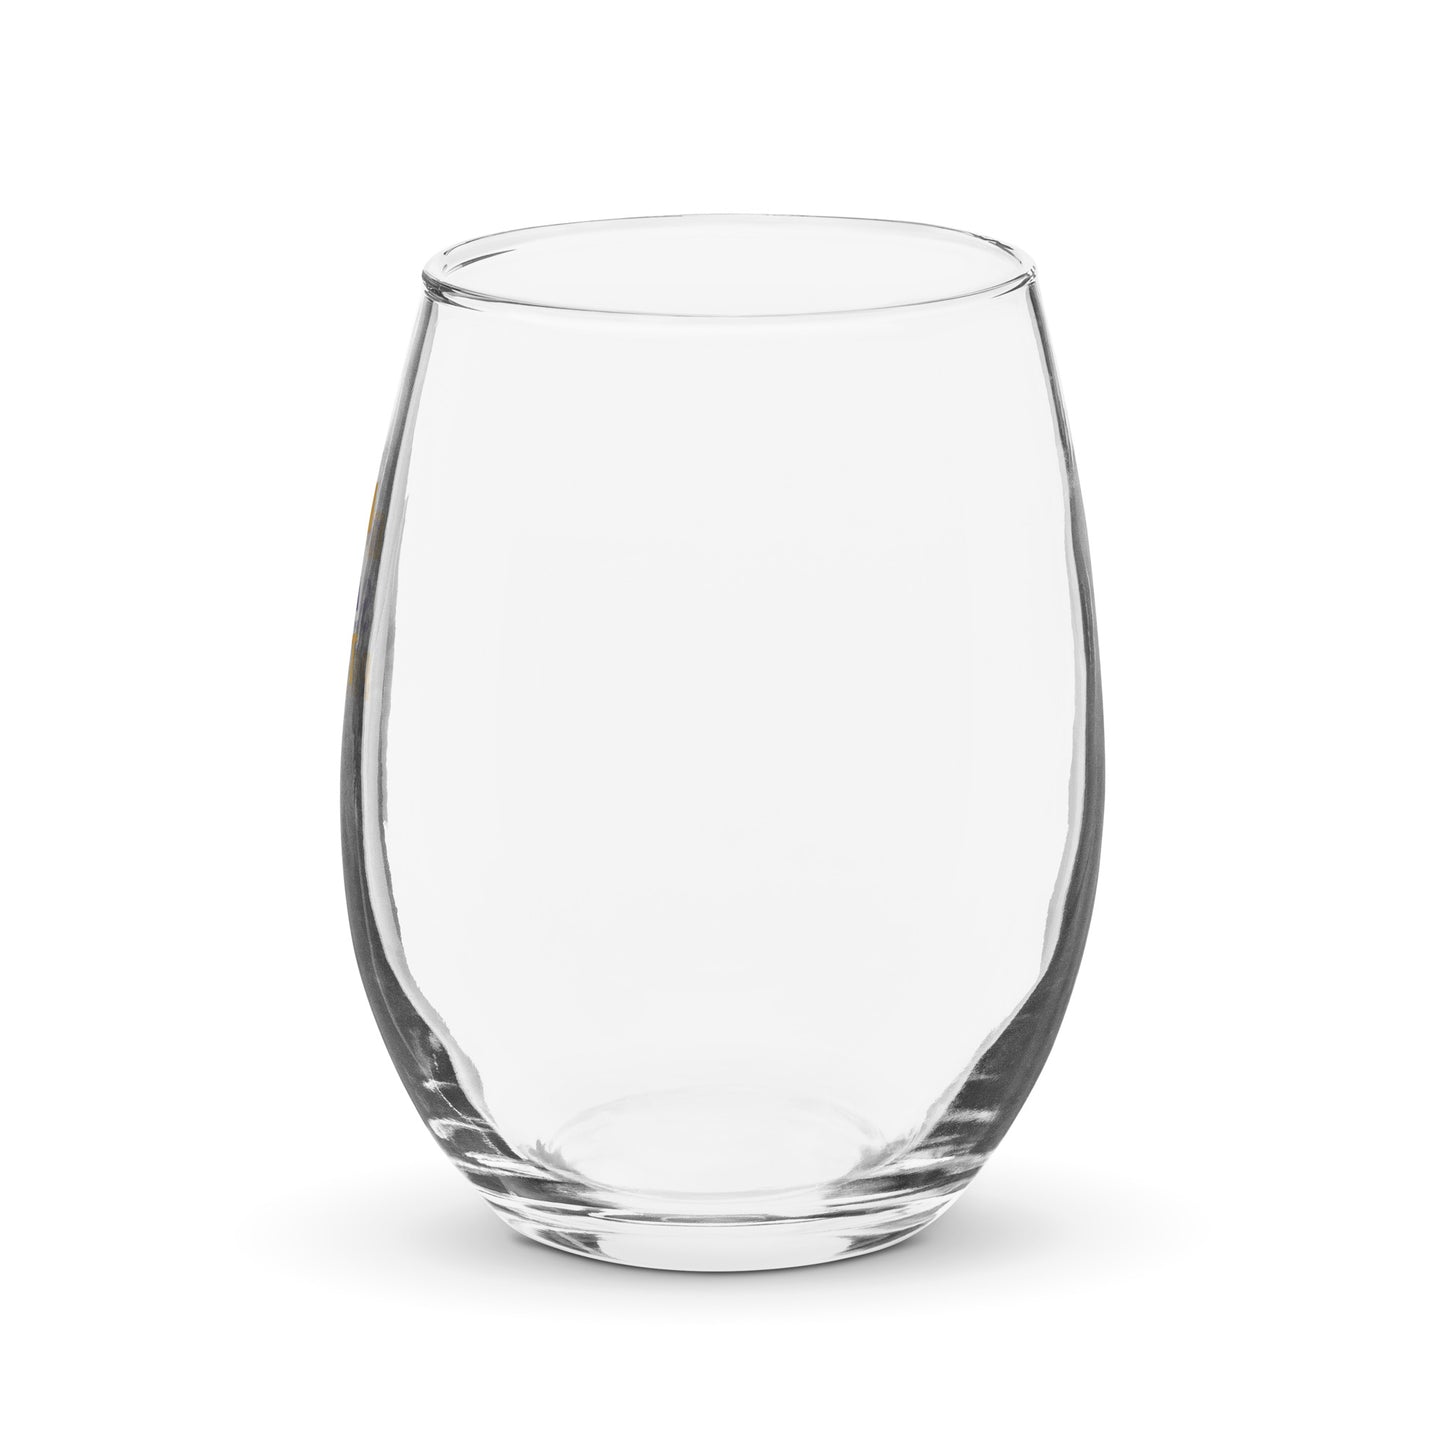 SENECA PROJECT LOGO STEMLESS WINE GLASS